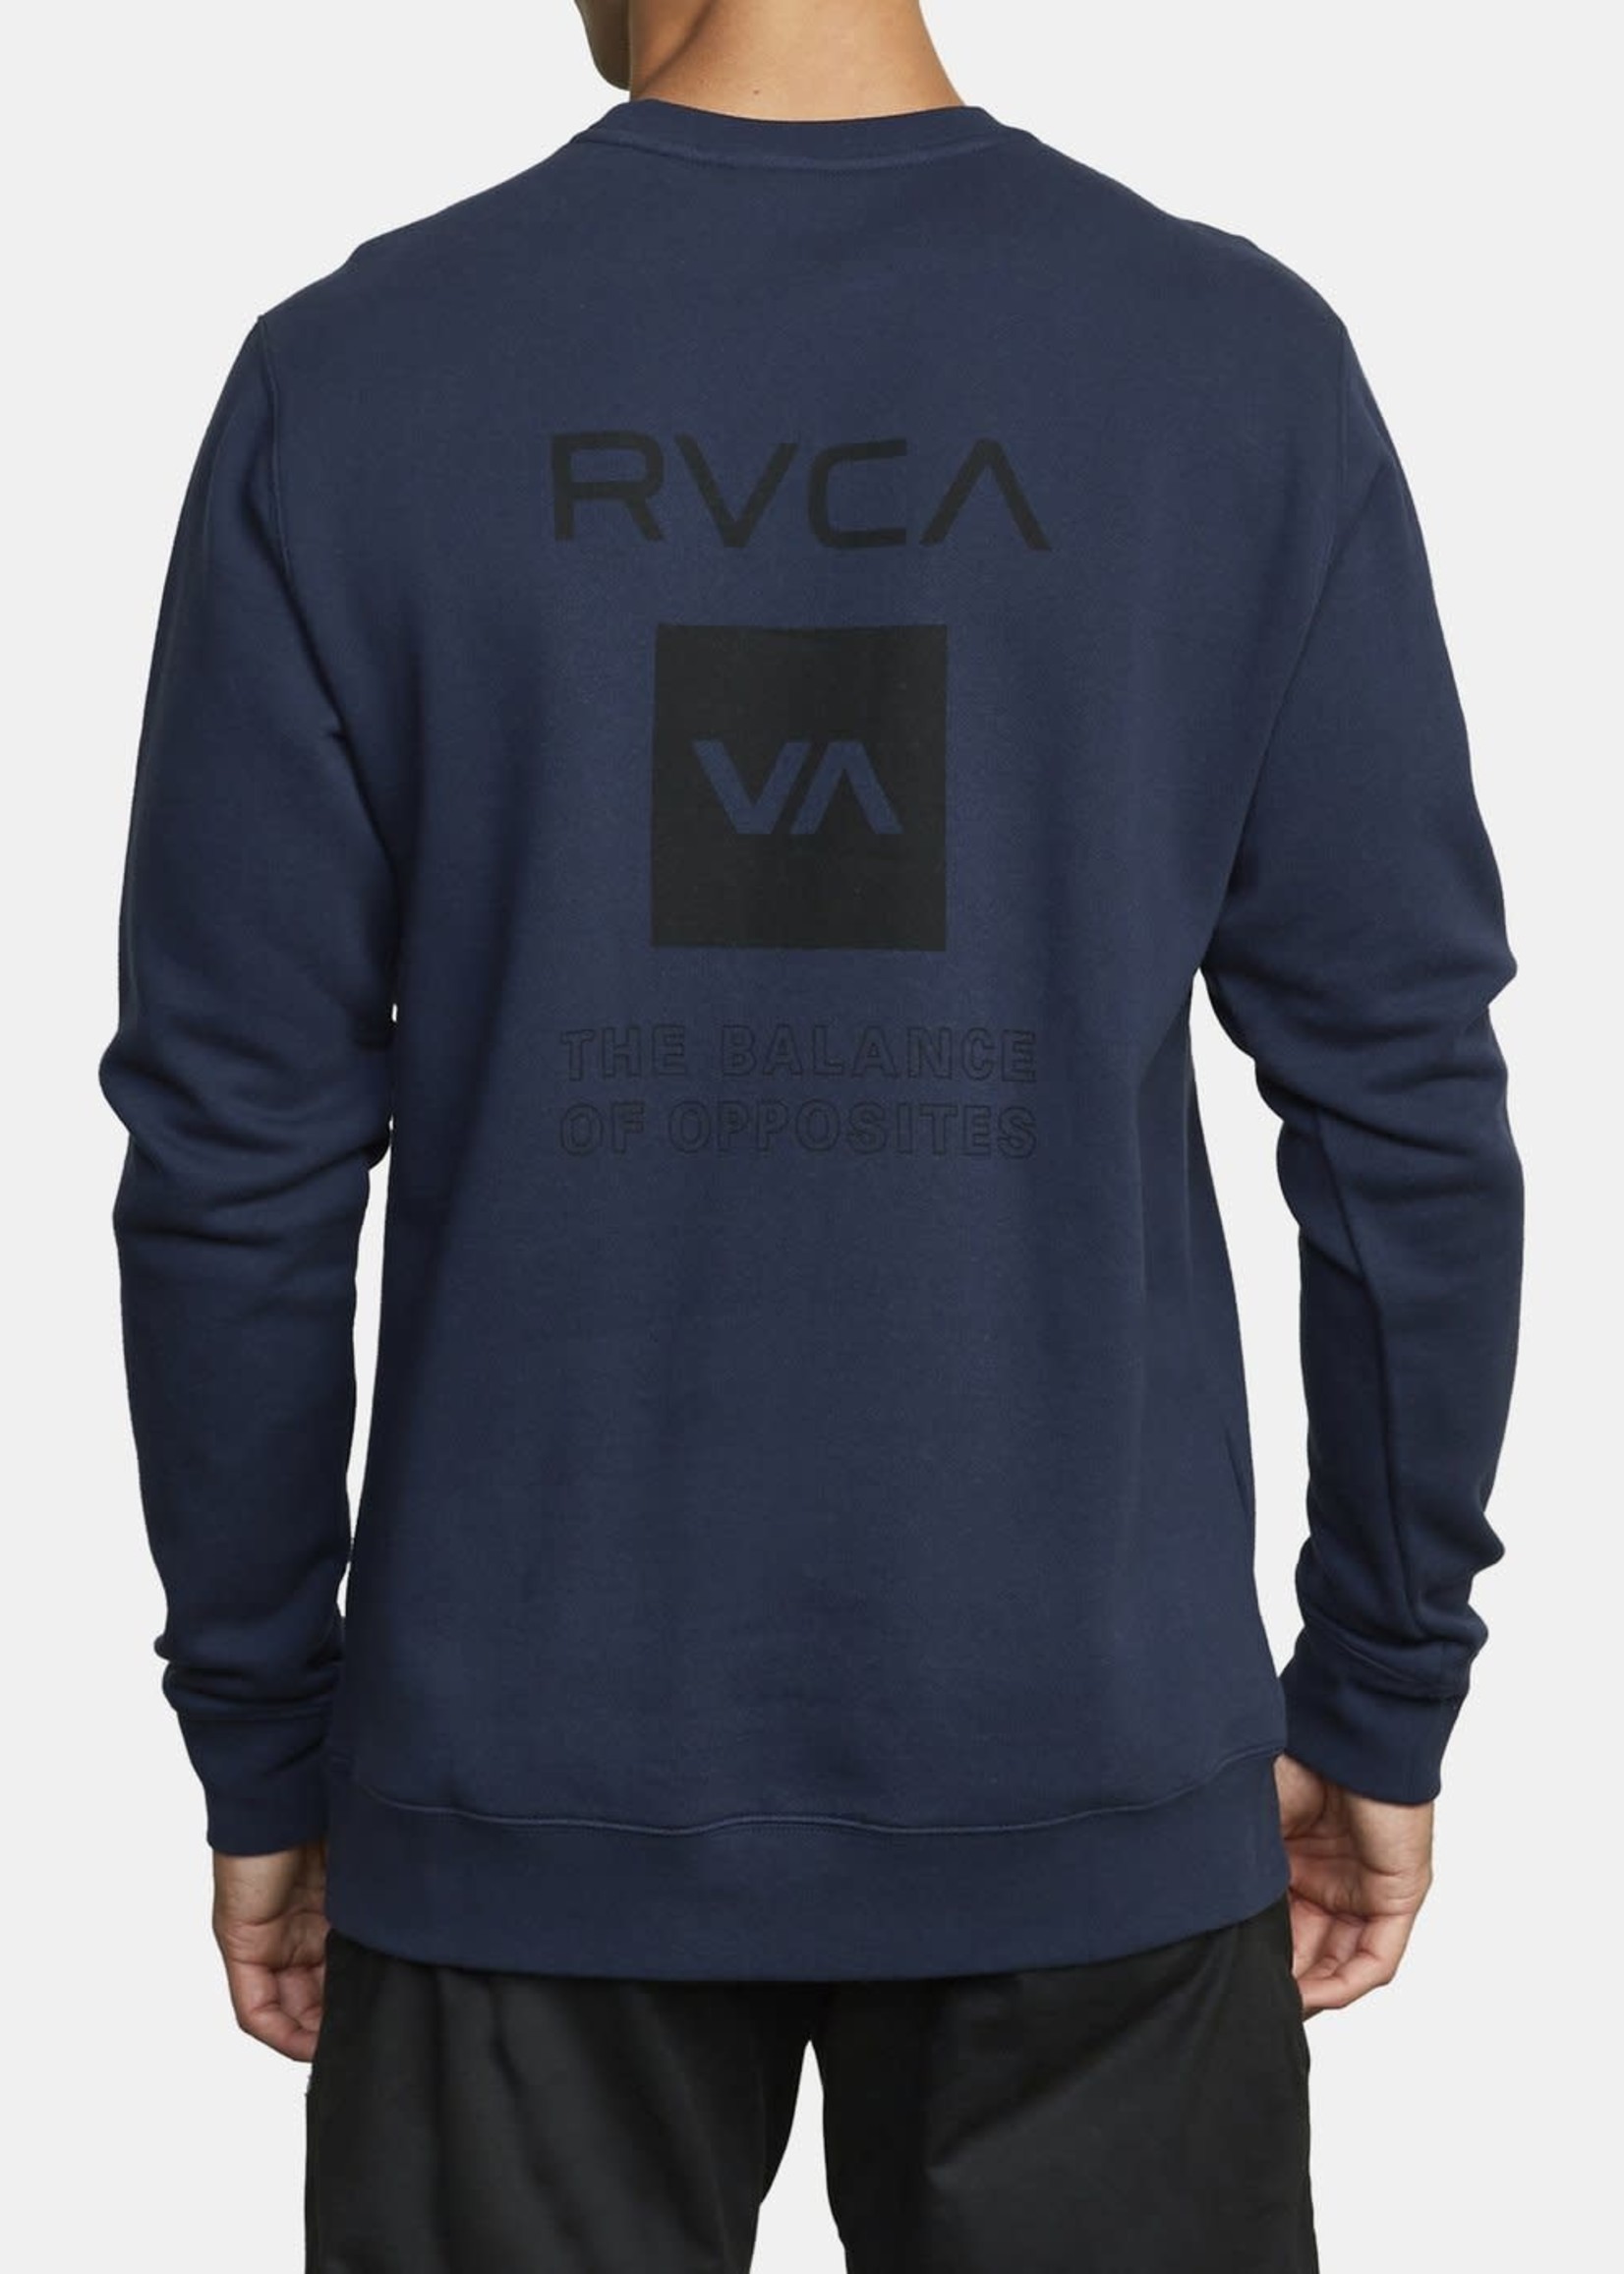 RVCA Sport Graphic Pullover Sweater